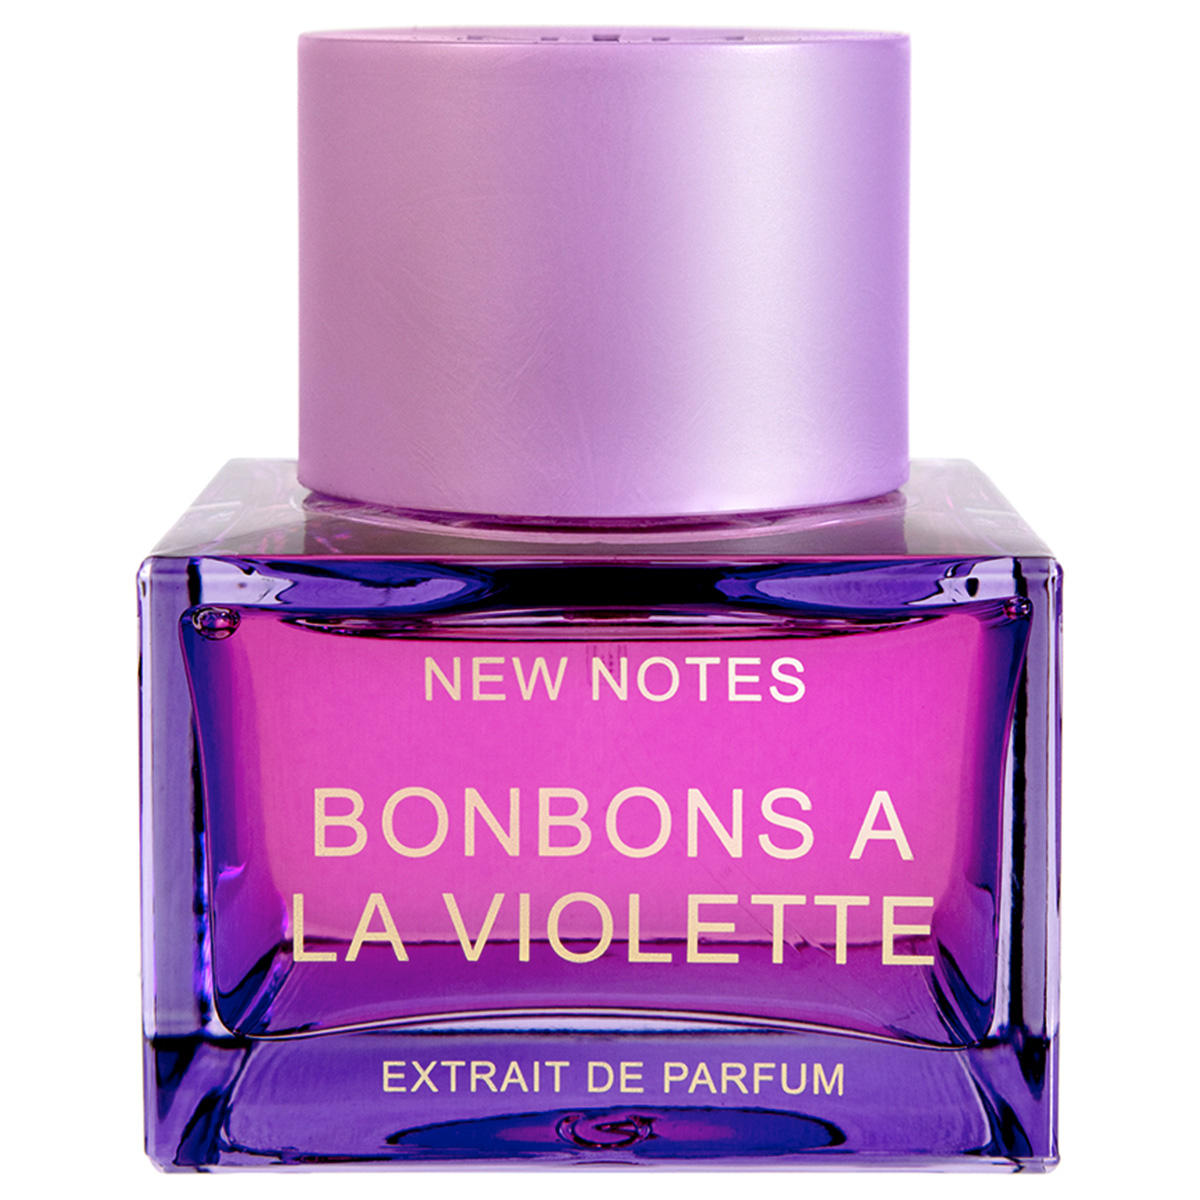 New Notes Bonbons A La Violette Extrait de Parfum 50 ml - 1